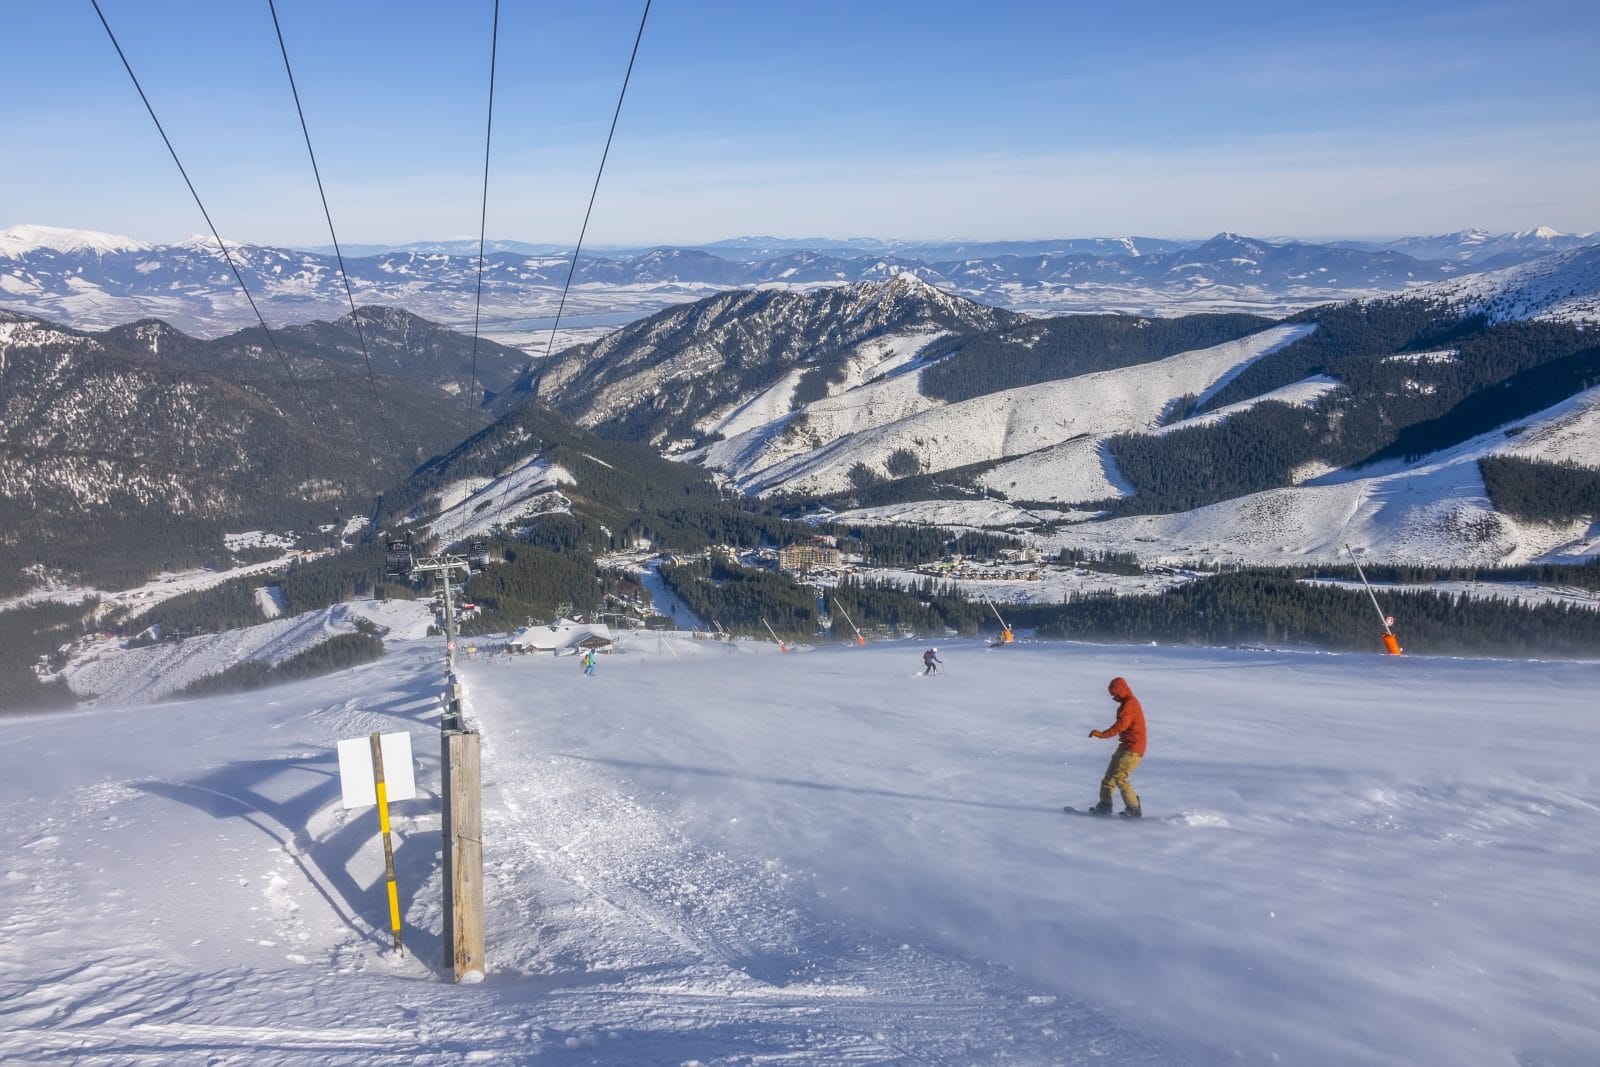 Snowboarder on a sunny ski slope 1091408